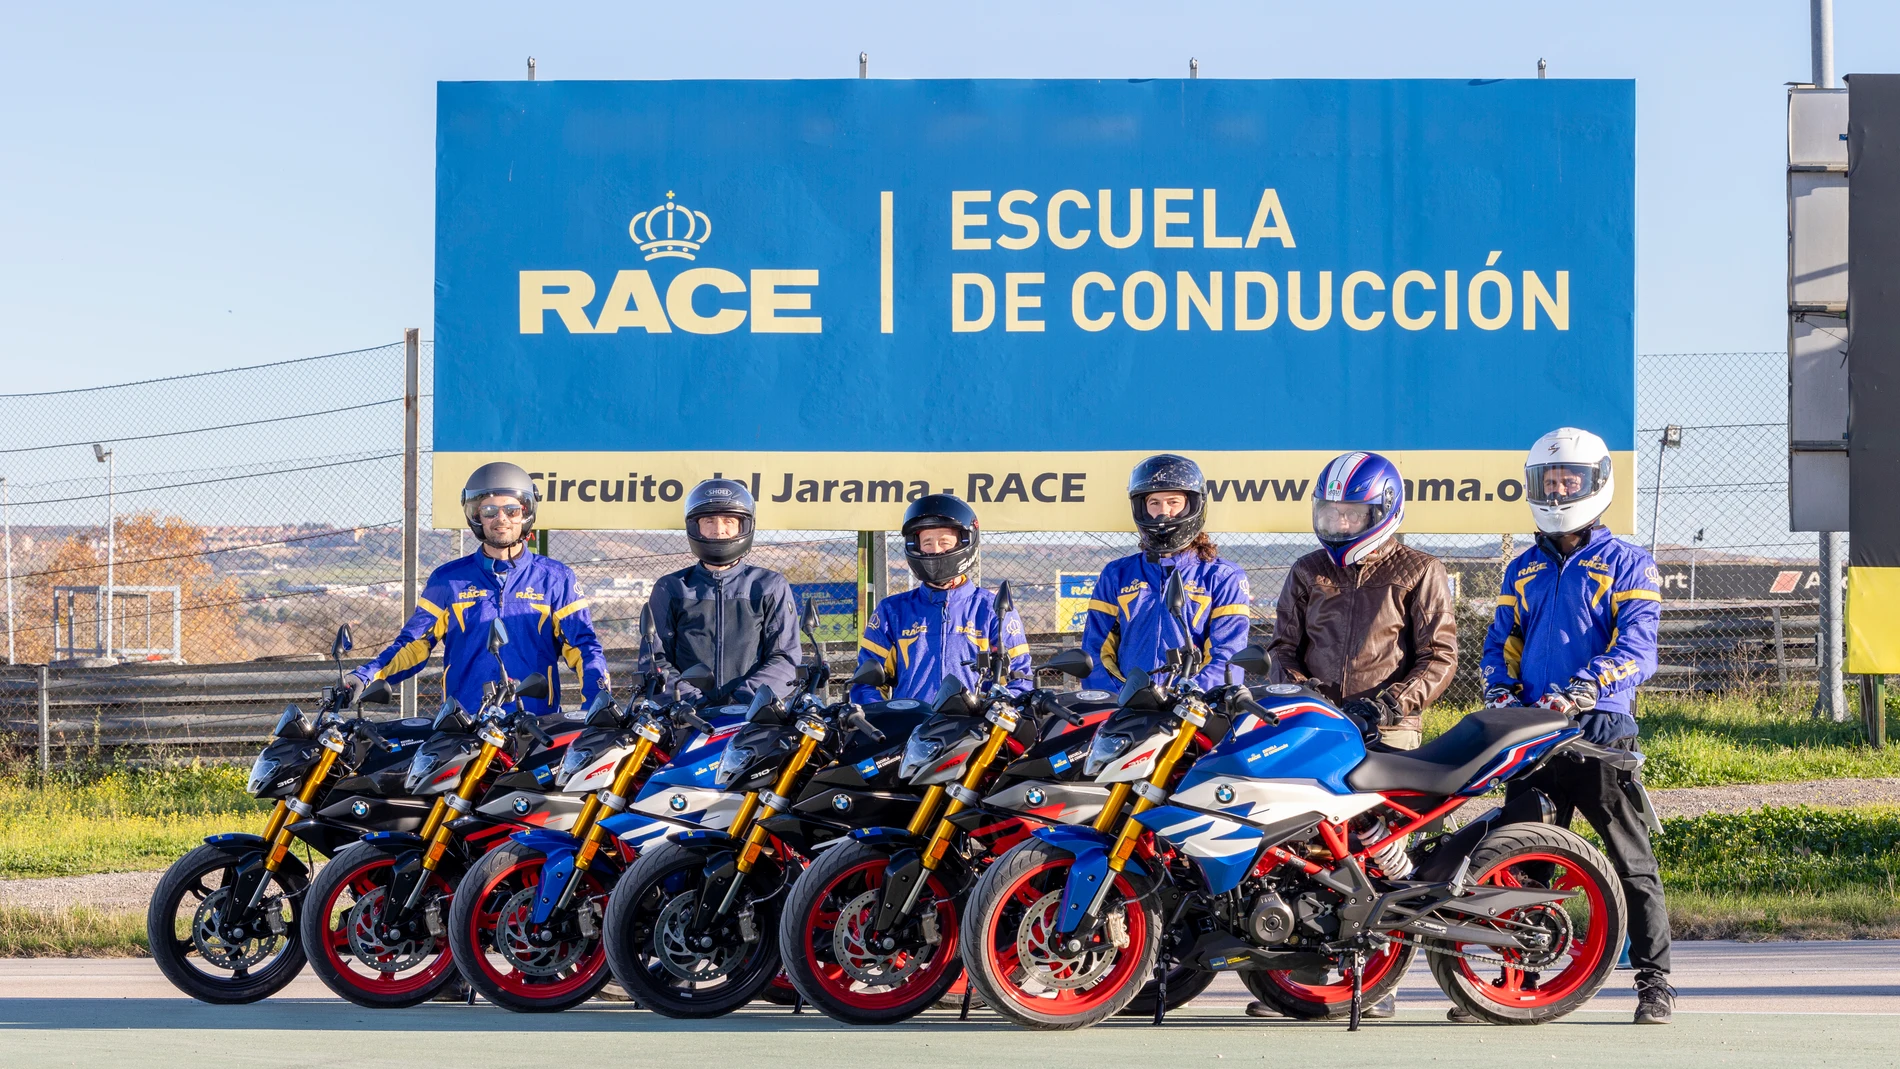 El RACE incorpora motos en su escuela de conducción